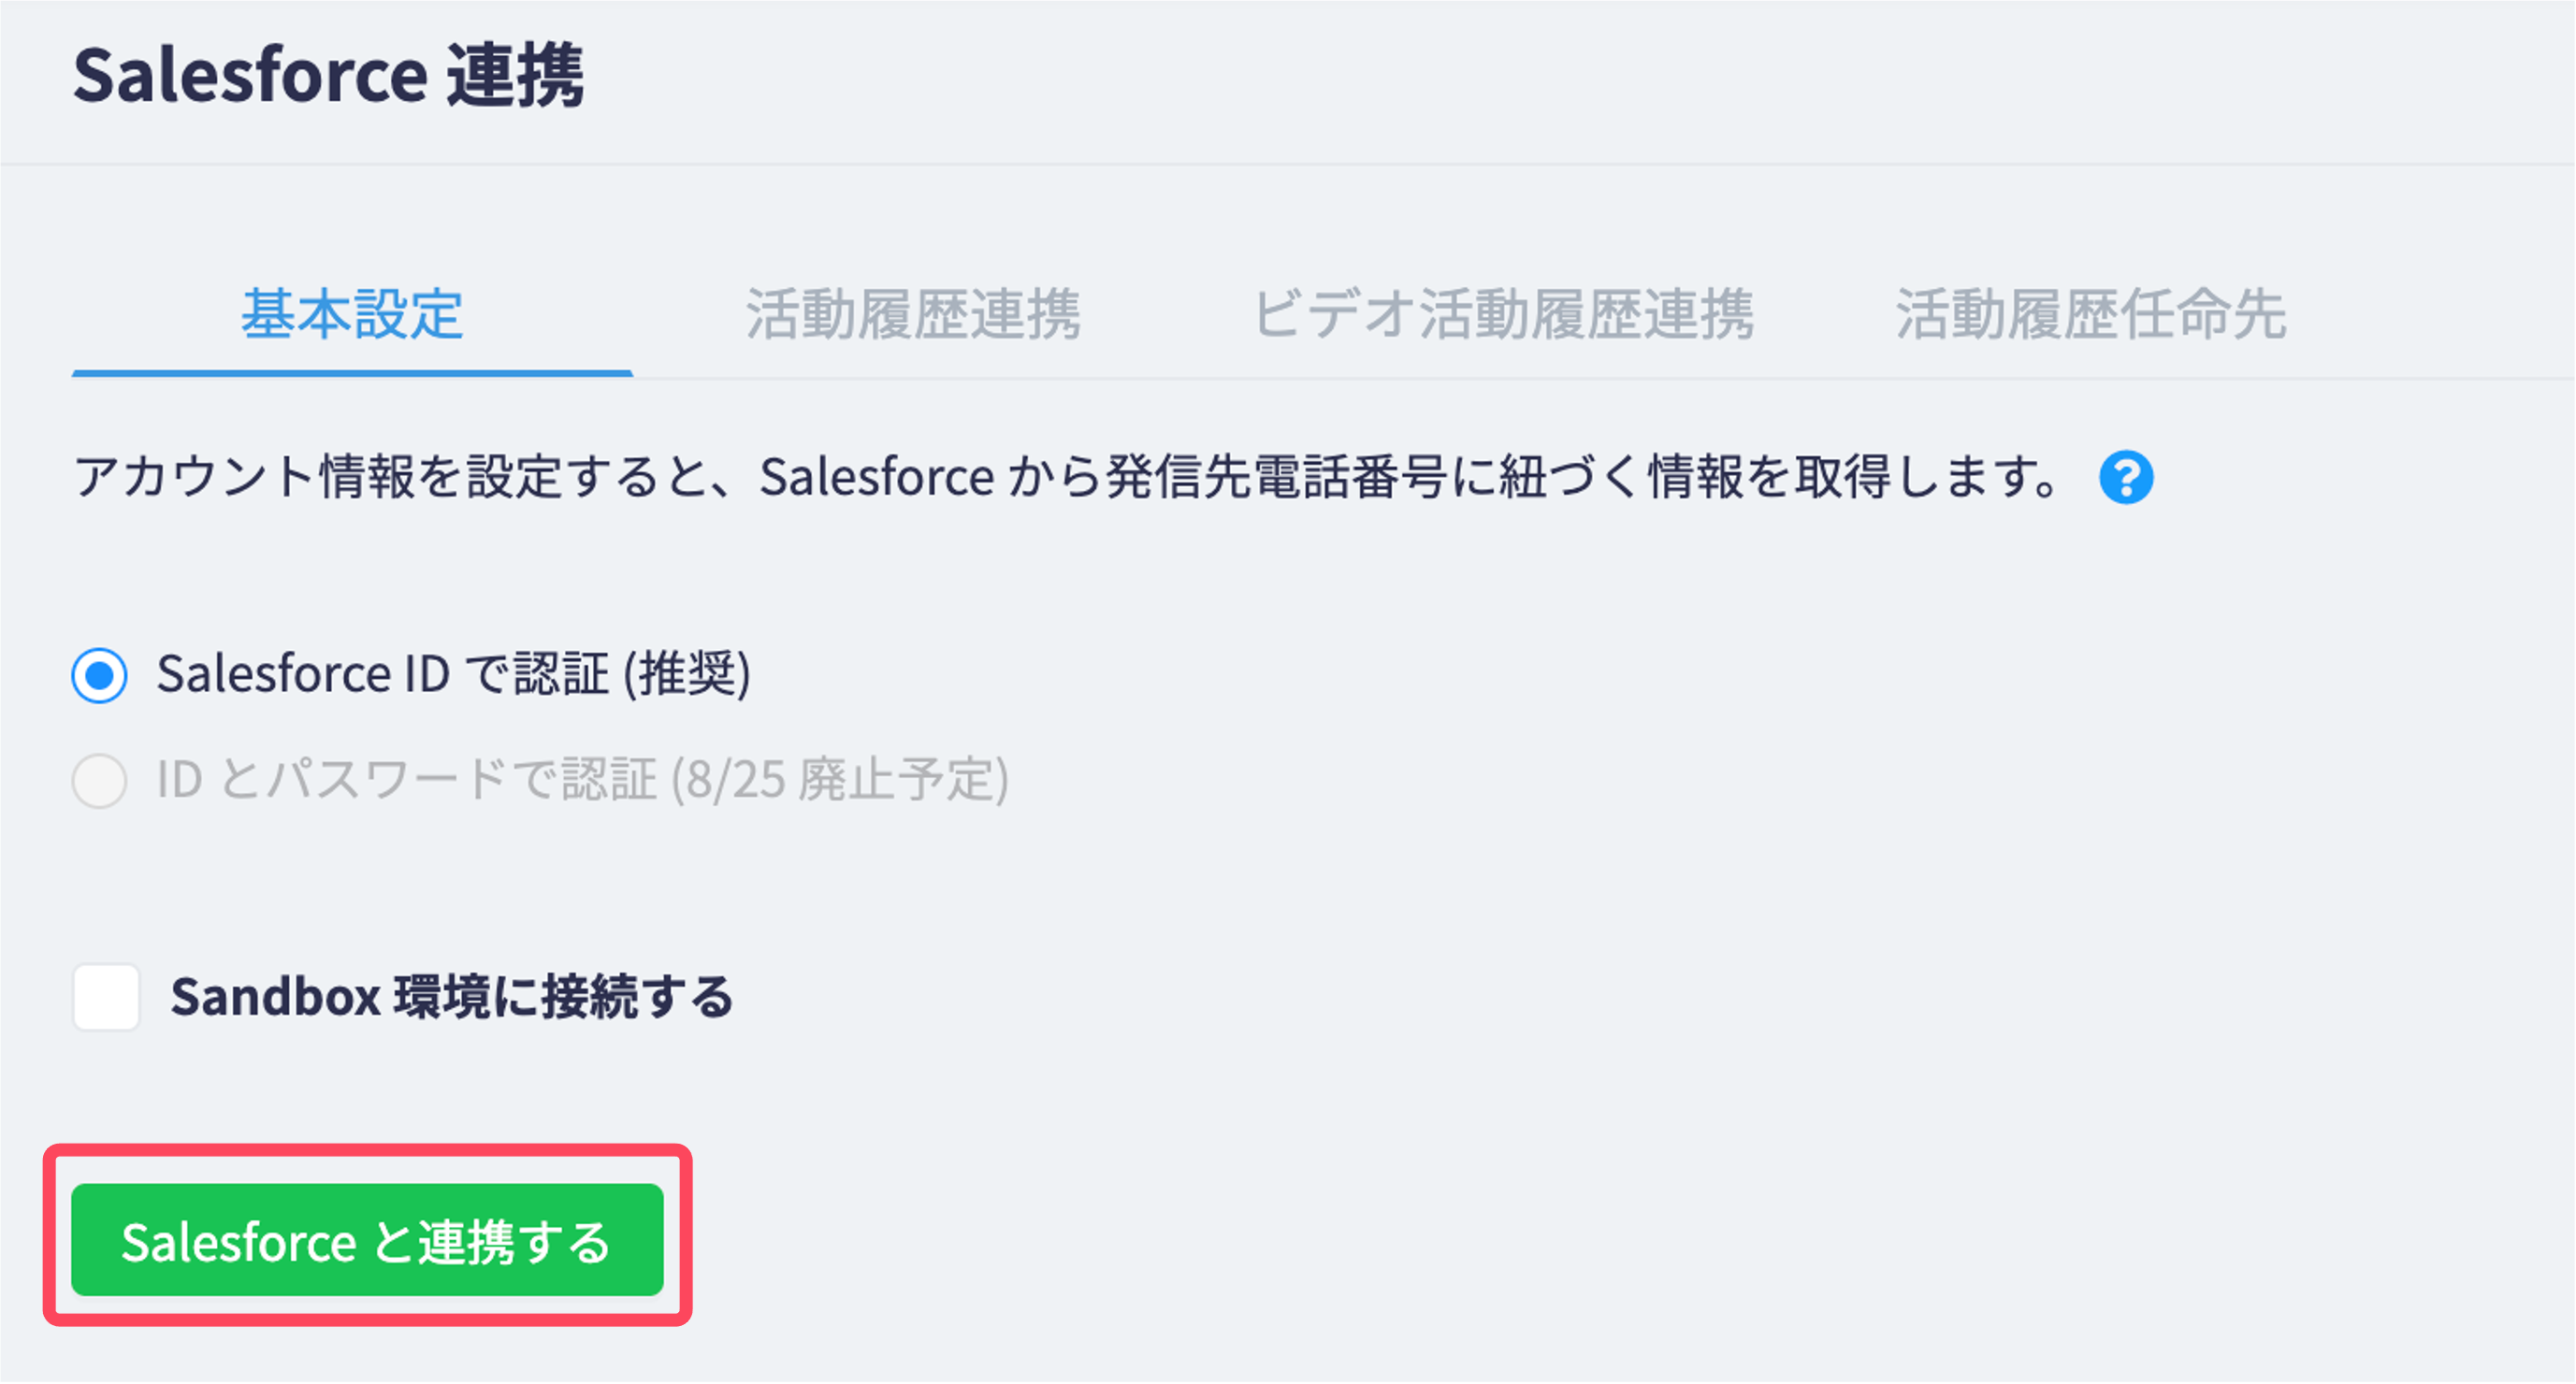 Salesforce_integration1.png